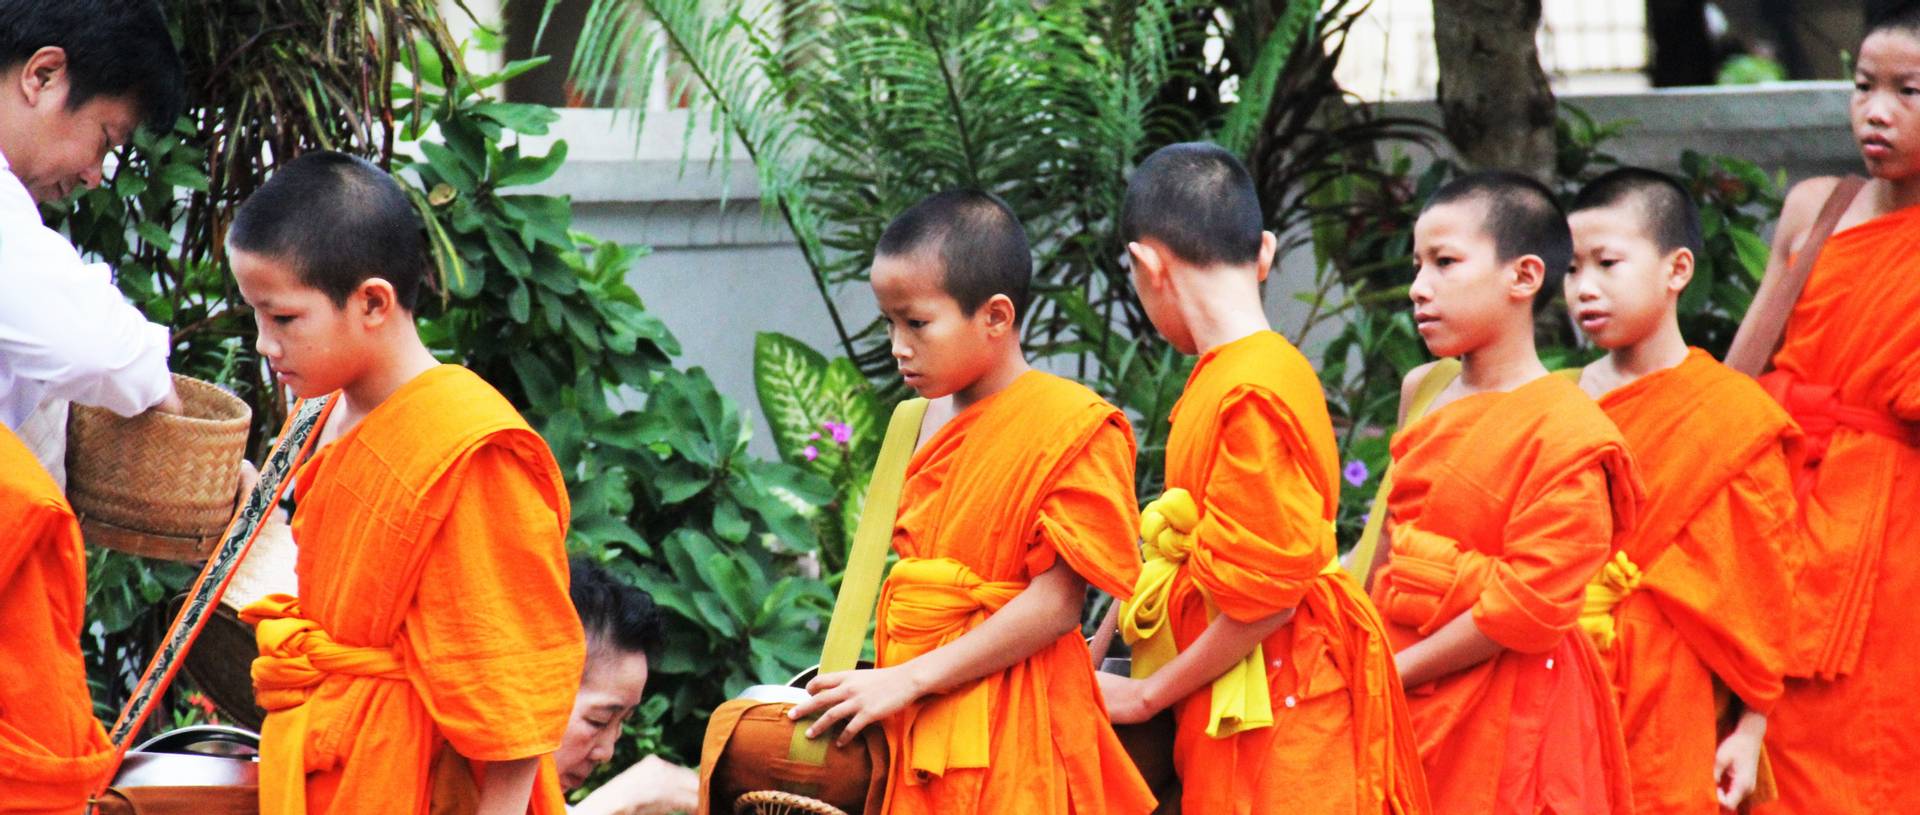 Luang Prabang Alms